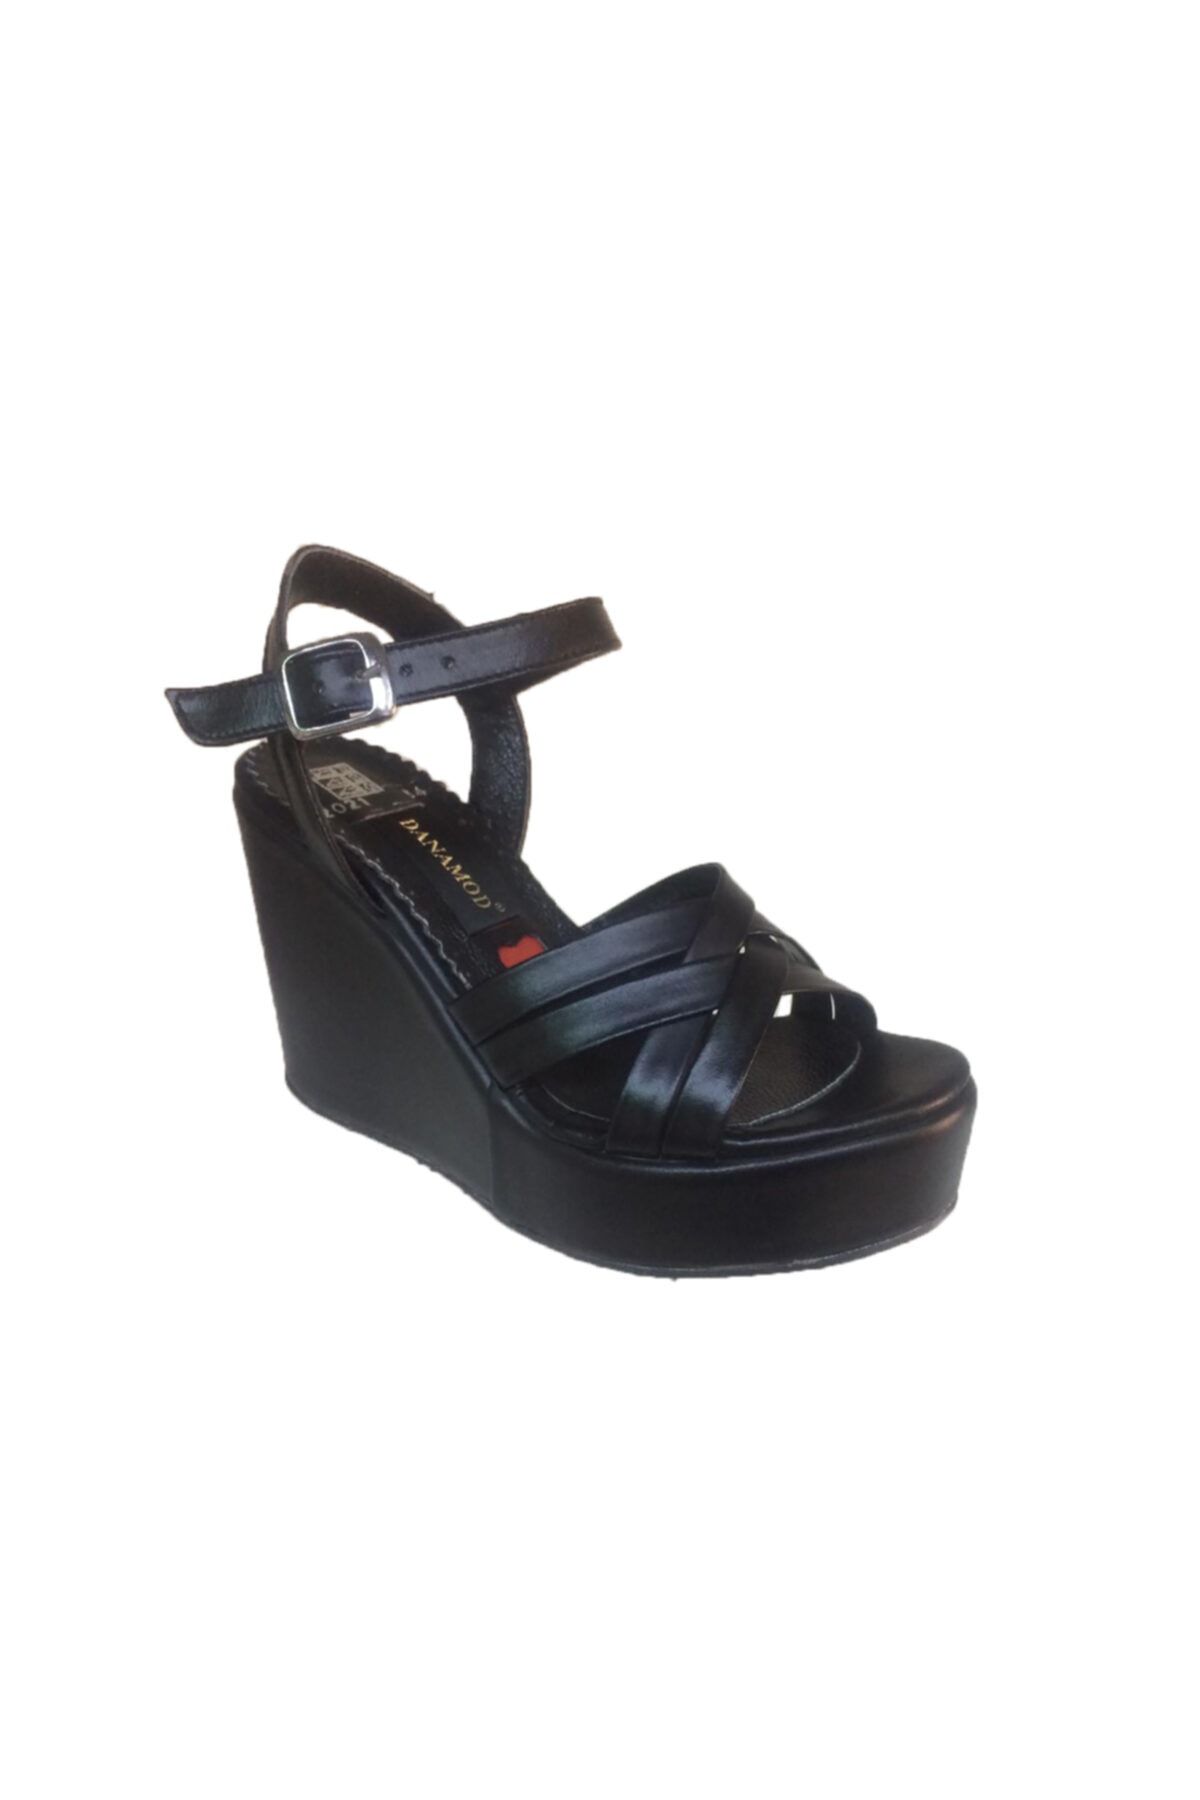 Elegan Wedge Shoes - Black - High heels (10 cm and above) - Trendyol